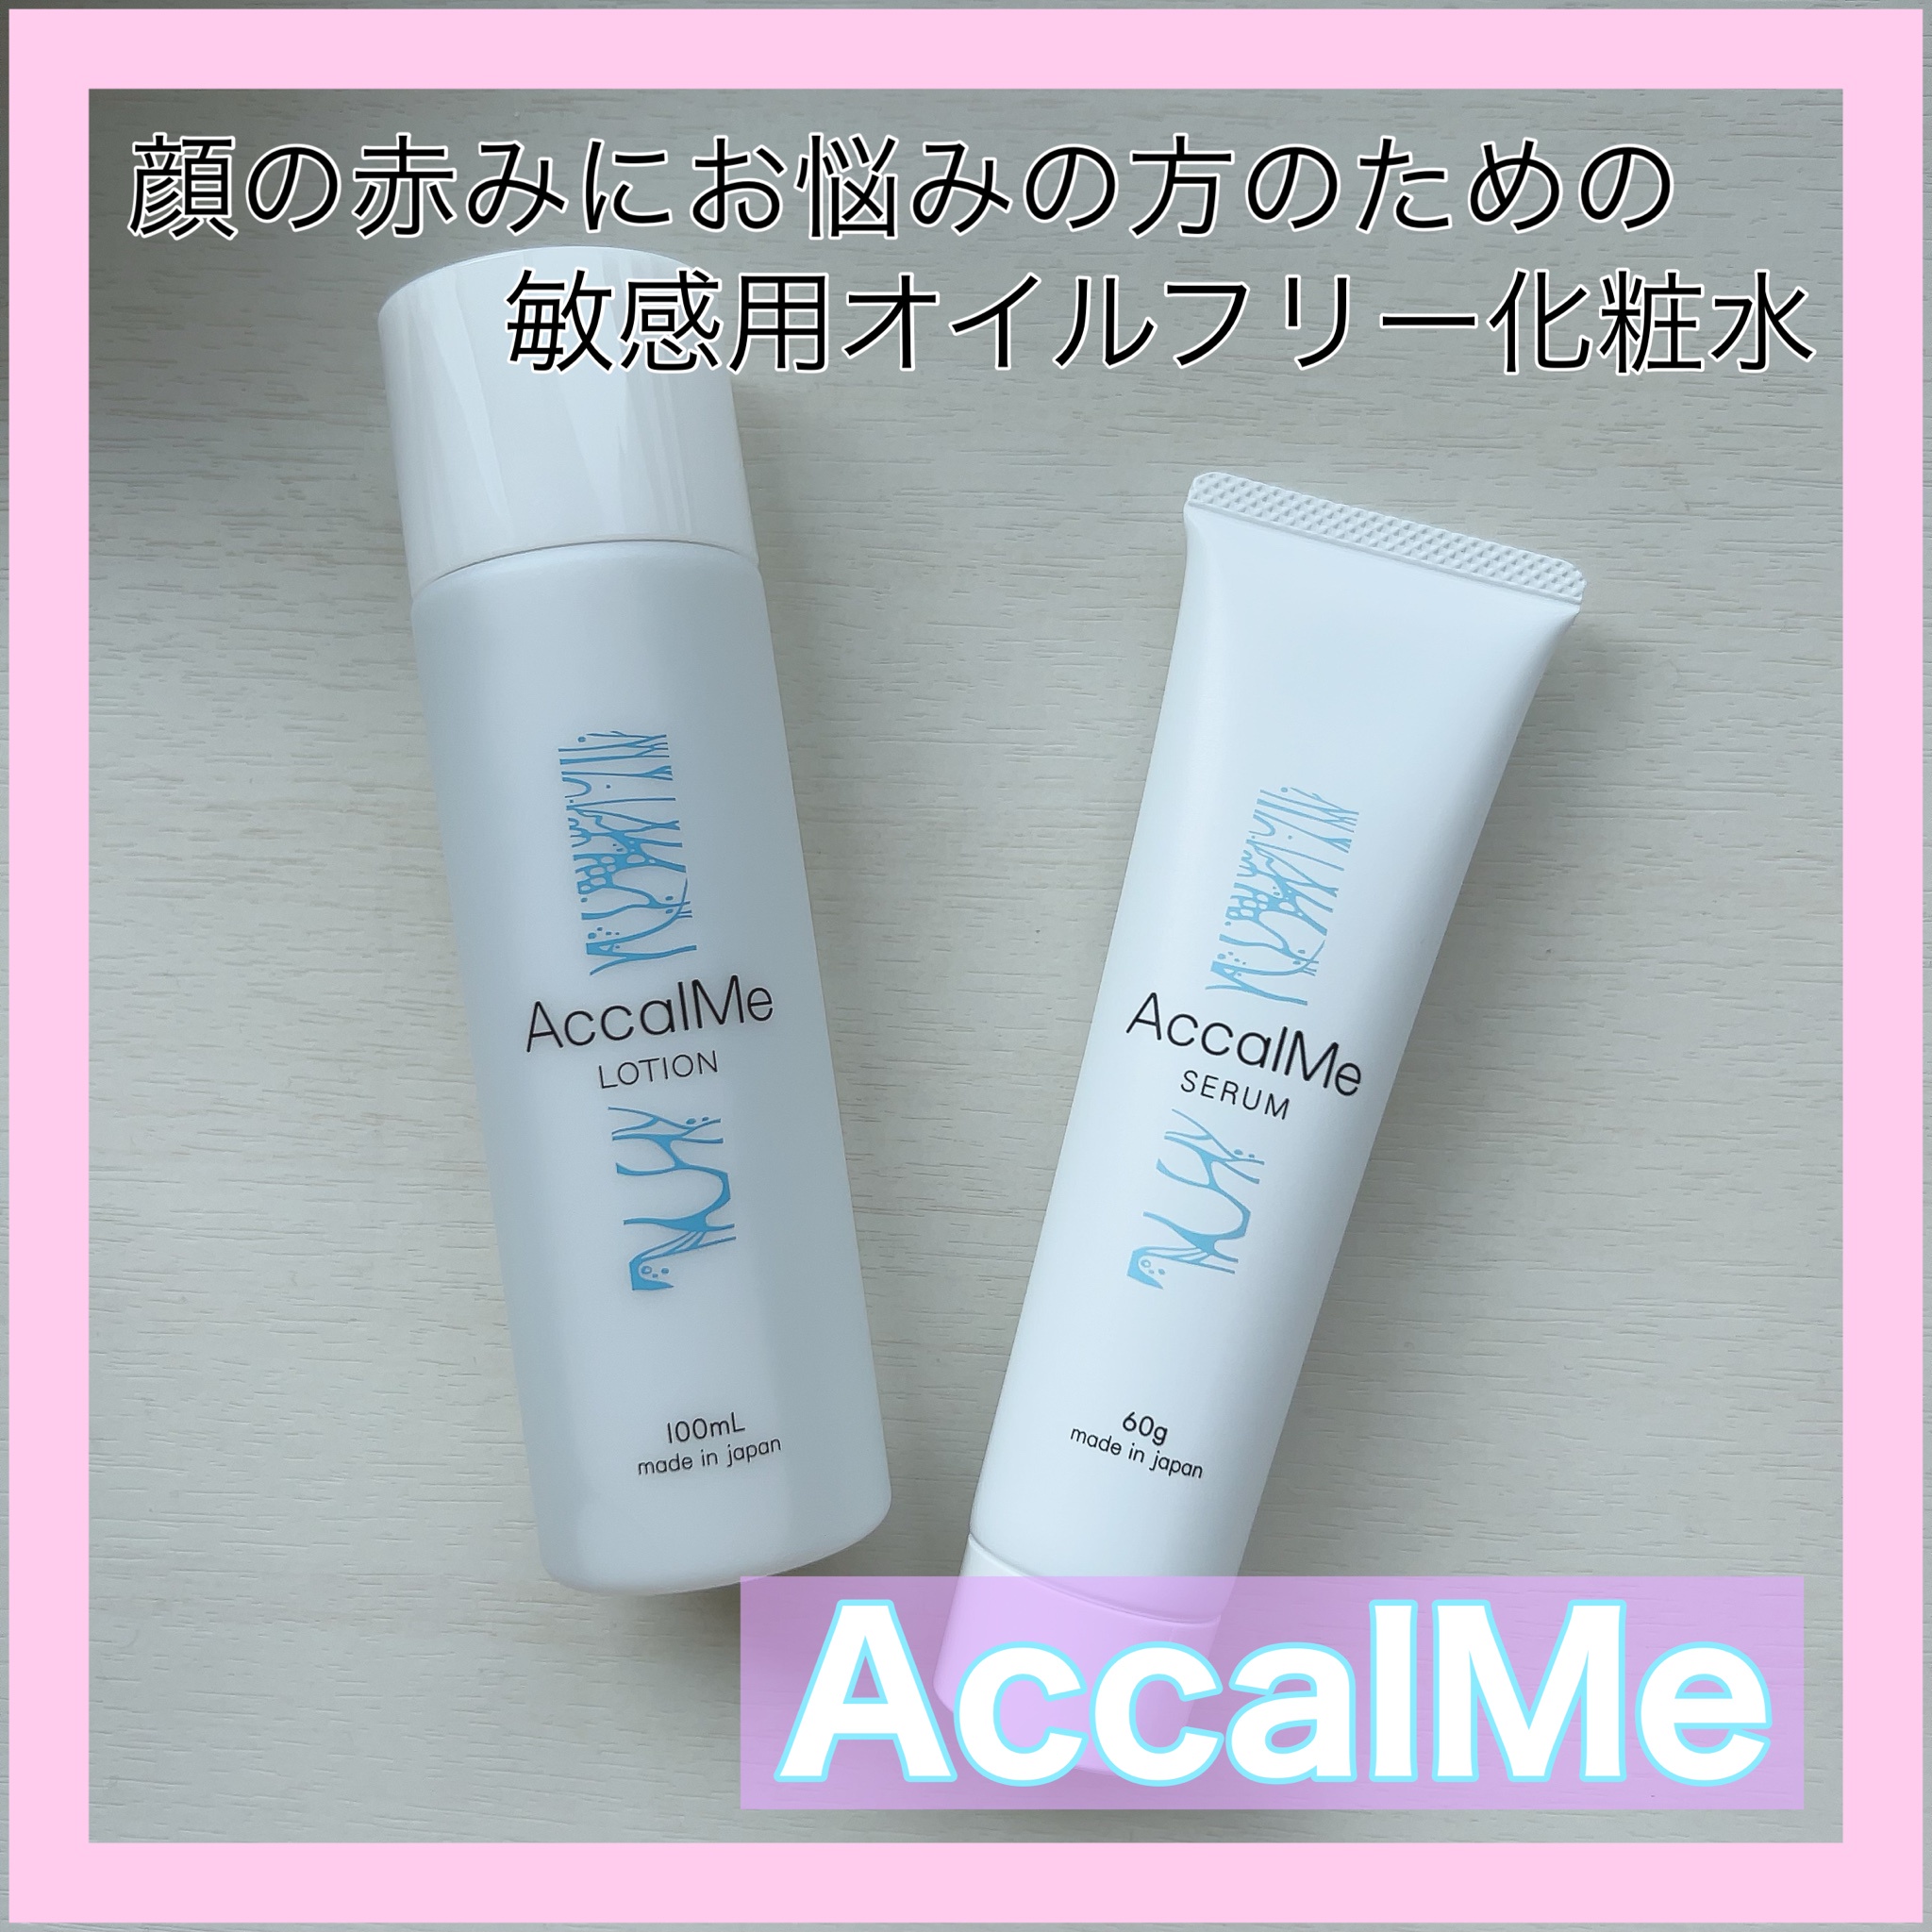 AccalMe (アカルミー) / アカルミー セラムの公式商品情報｜美容 